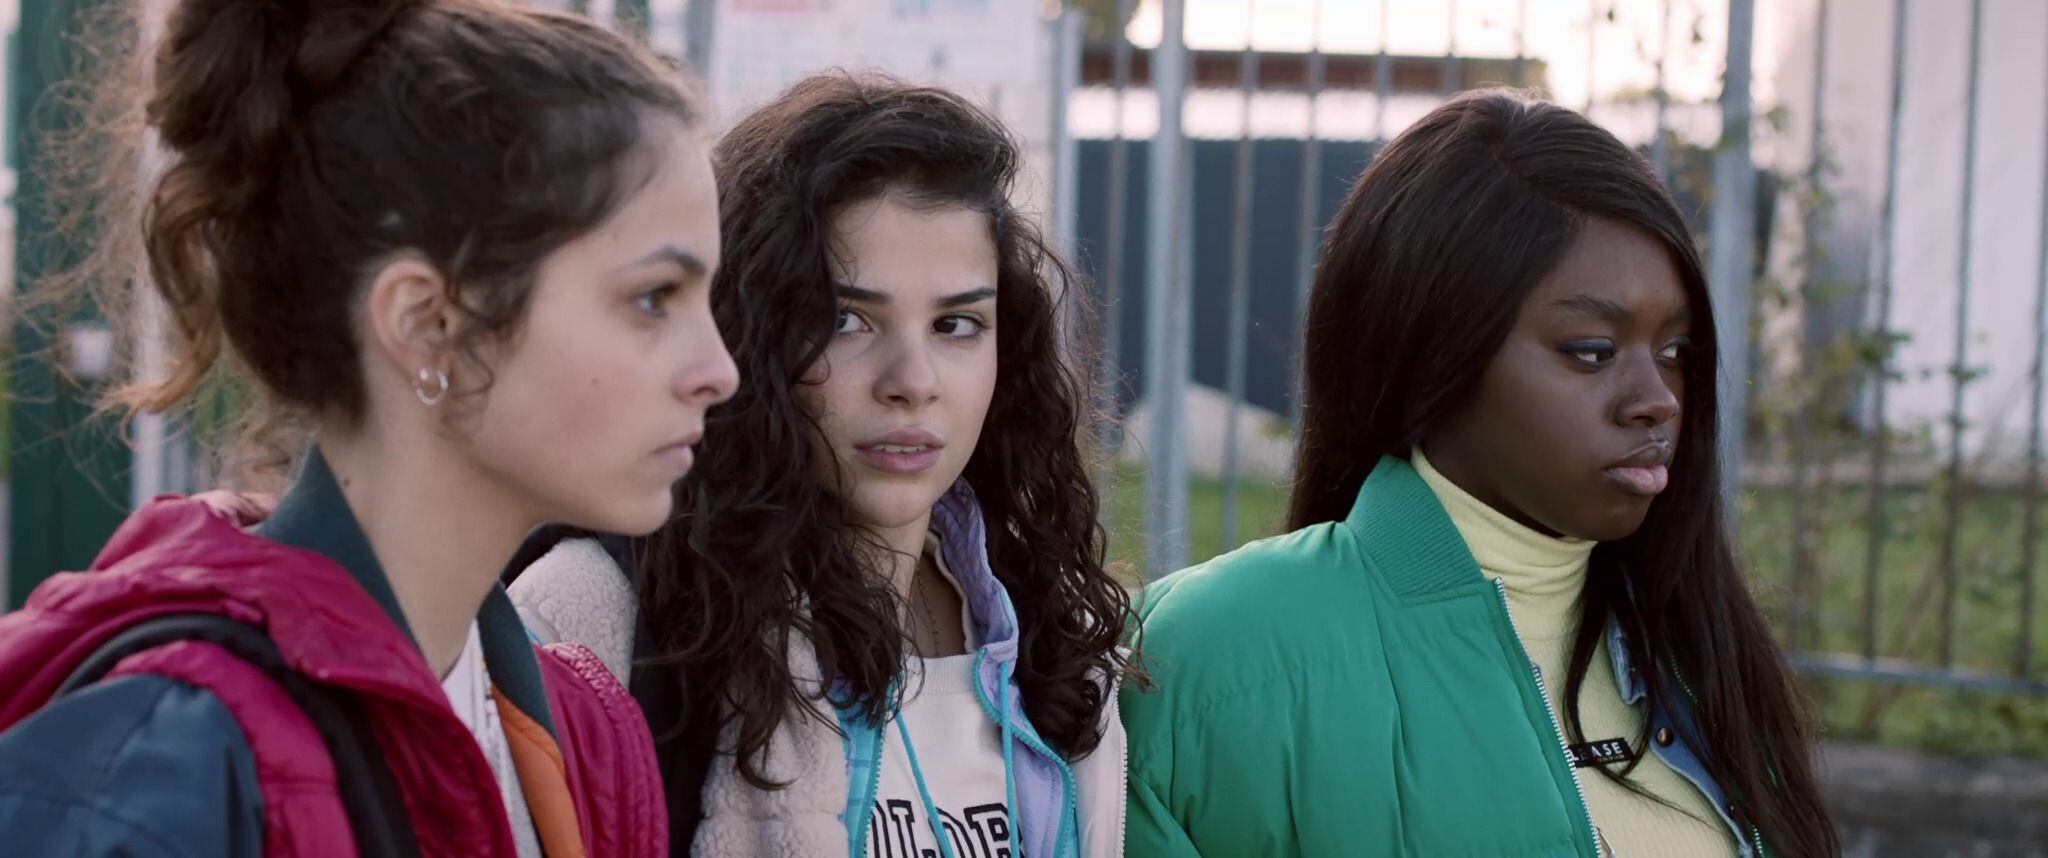 Amina, Djeneba y Zineb, tres amigas muy distintas y las protagonistas de 'HLM Pussy', la primera película de Nora El Hourch